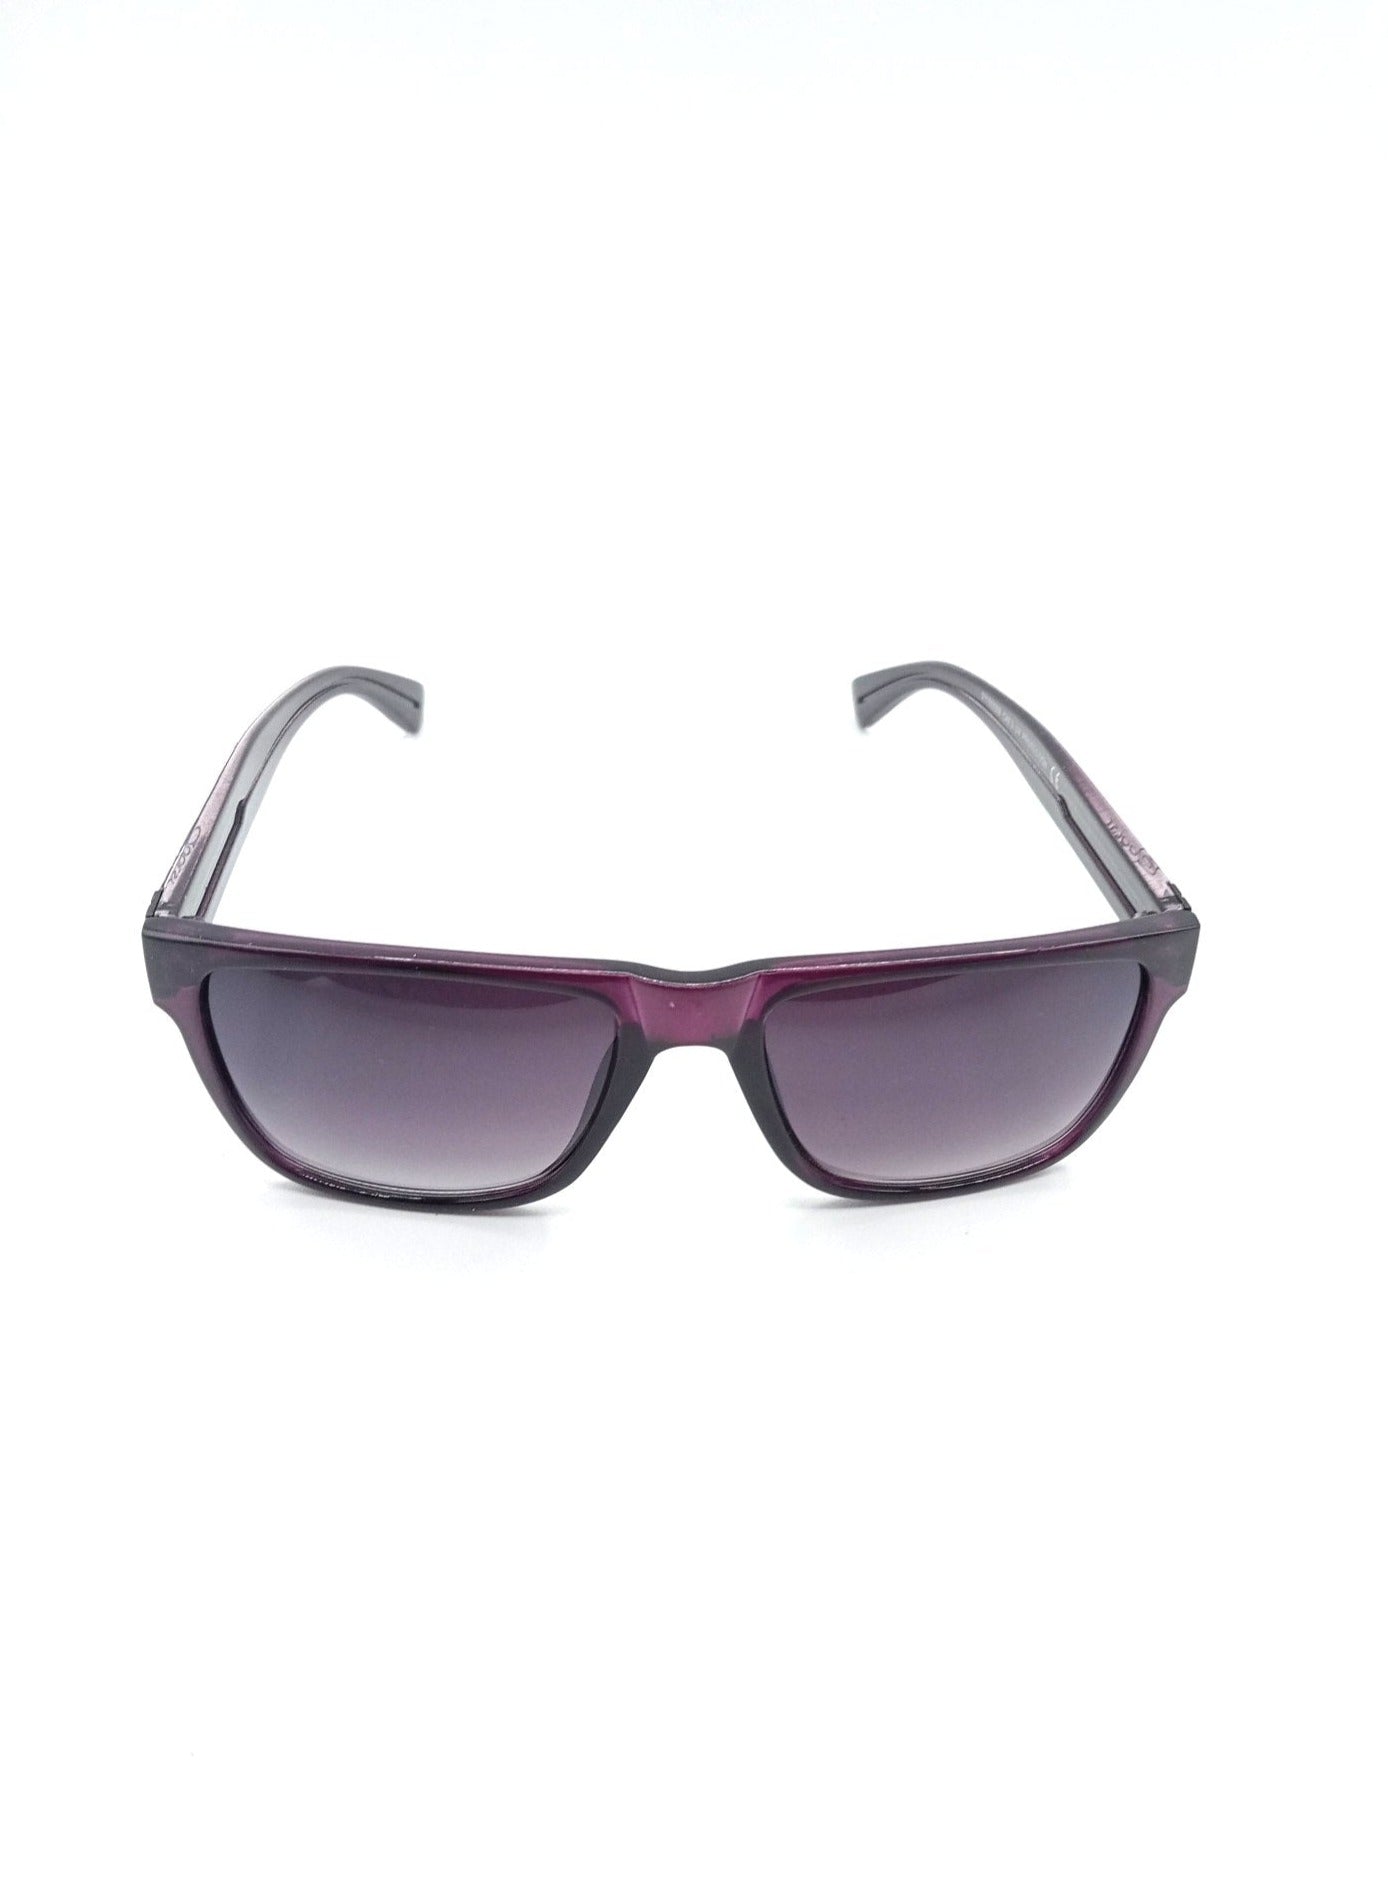 London Qoolst women's sunglasses